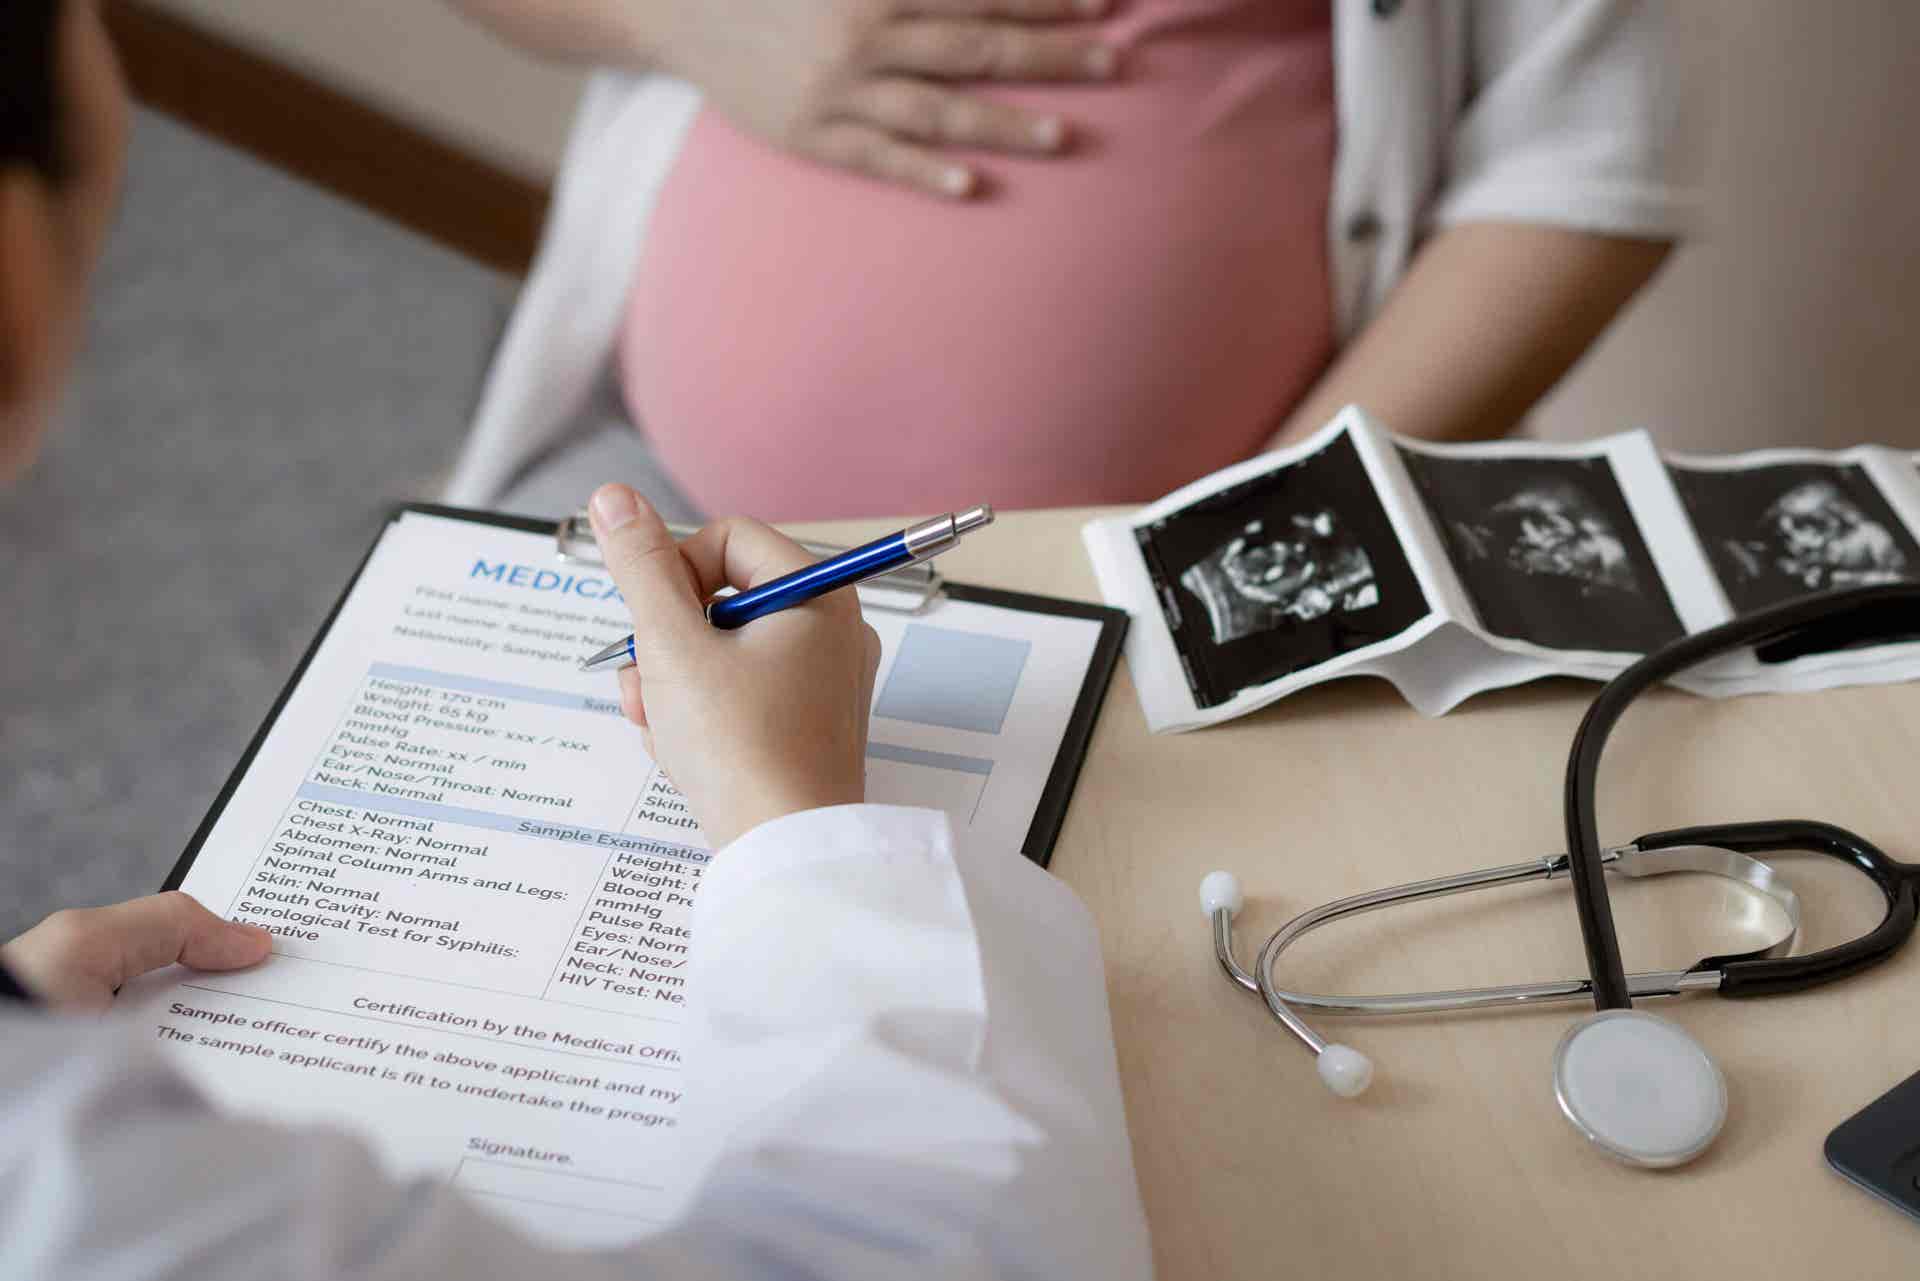 Quedar embarazada a los 45 años significa acudir al médico de forma responsable.